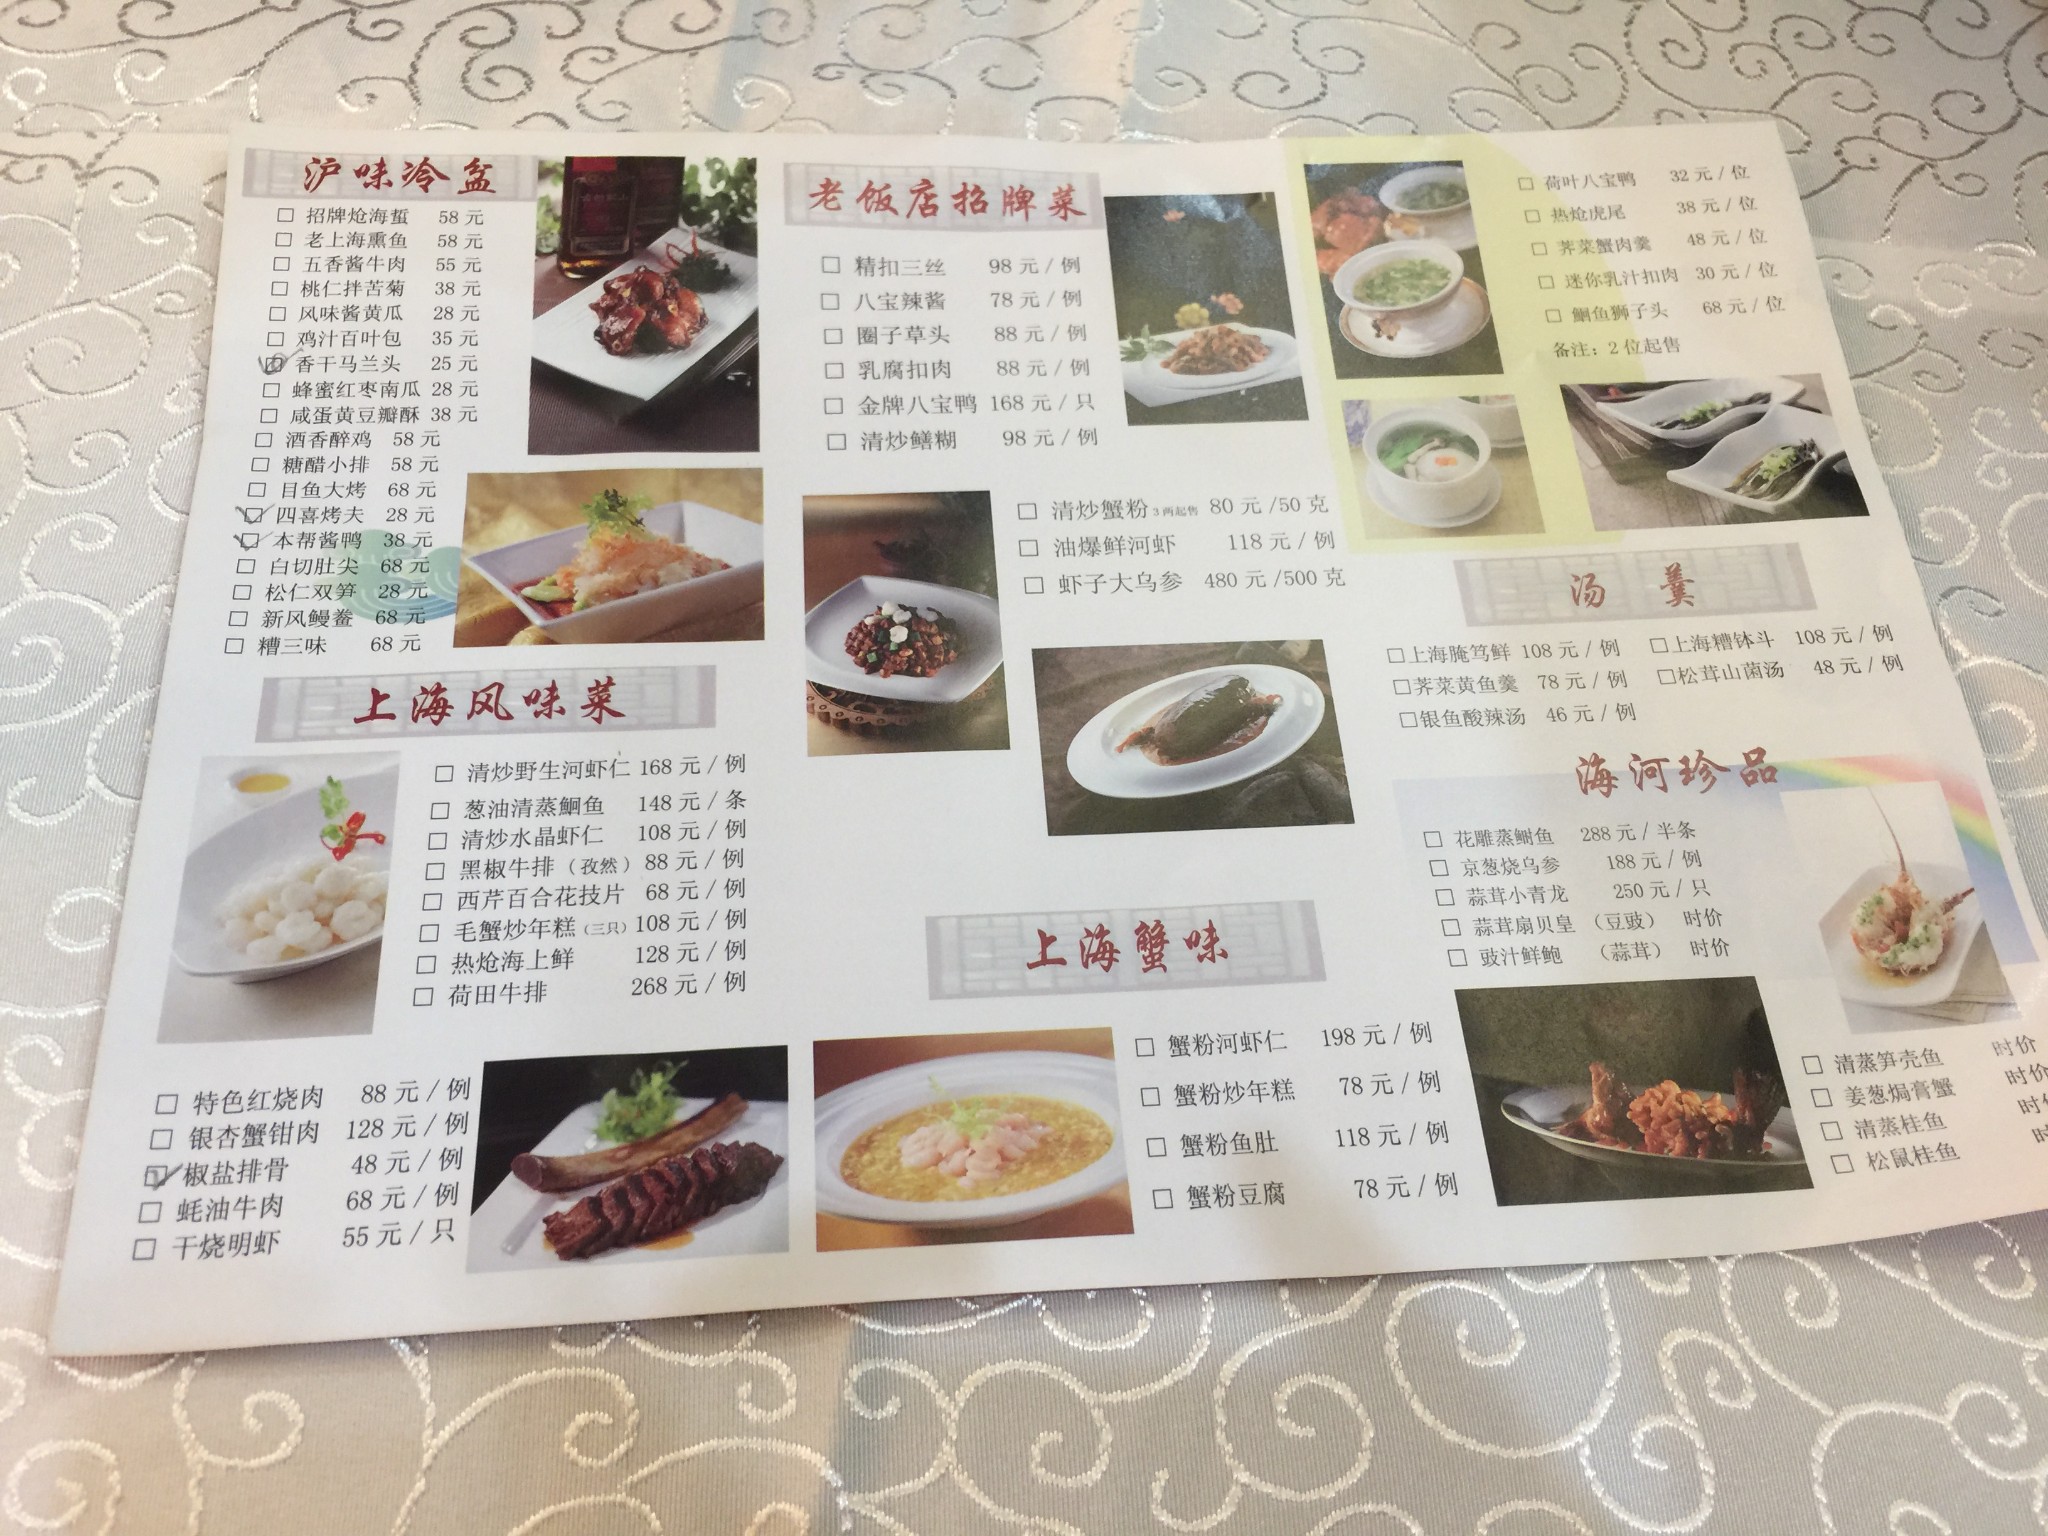 中山路惠宾楼饭庄菜单图片